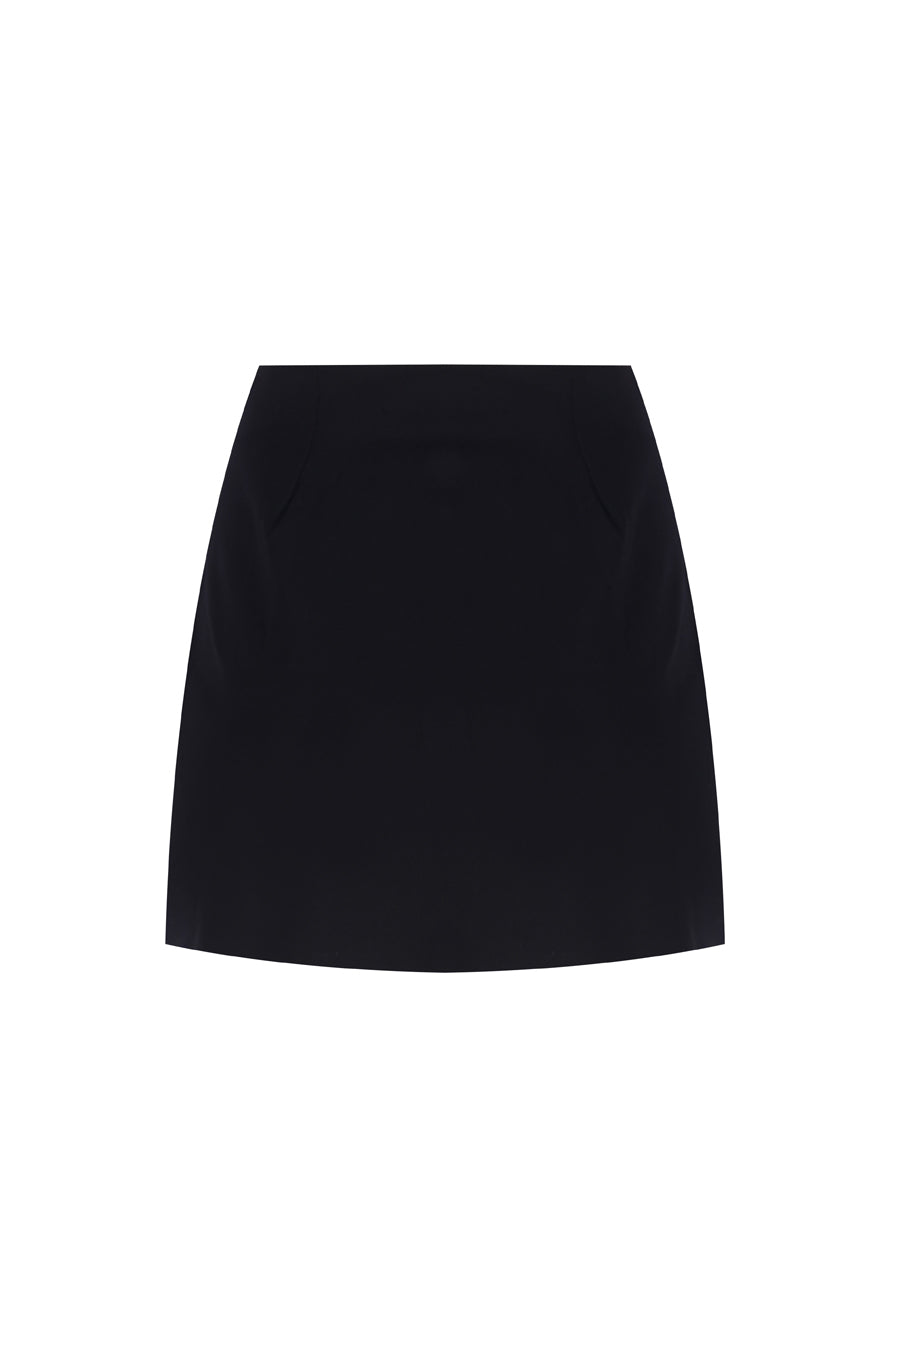 Court Mid-Rise Skirt